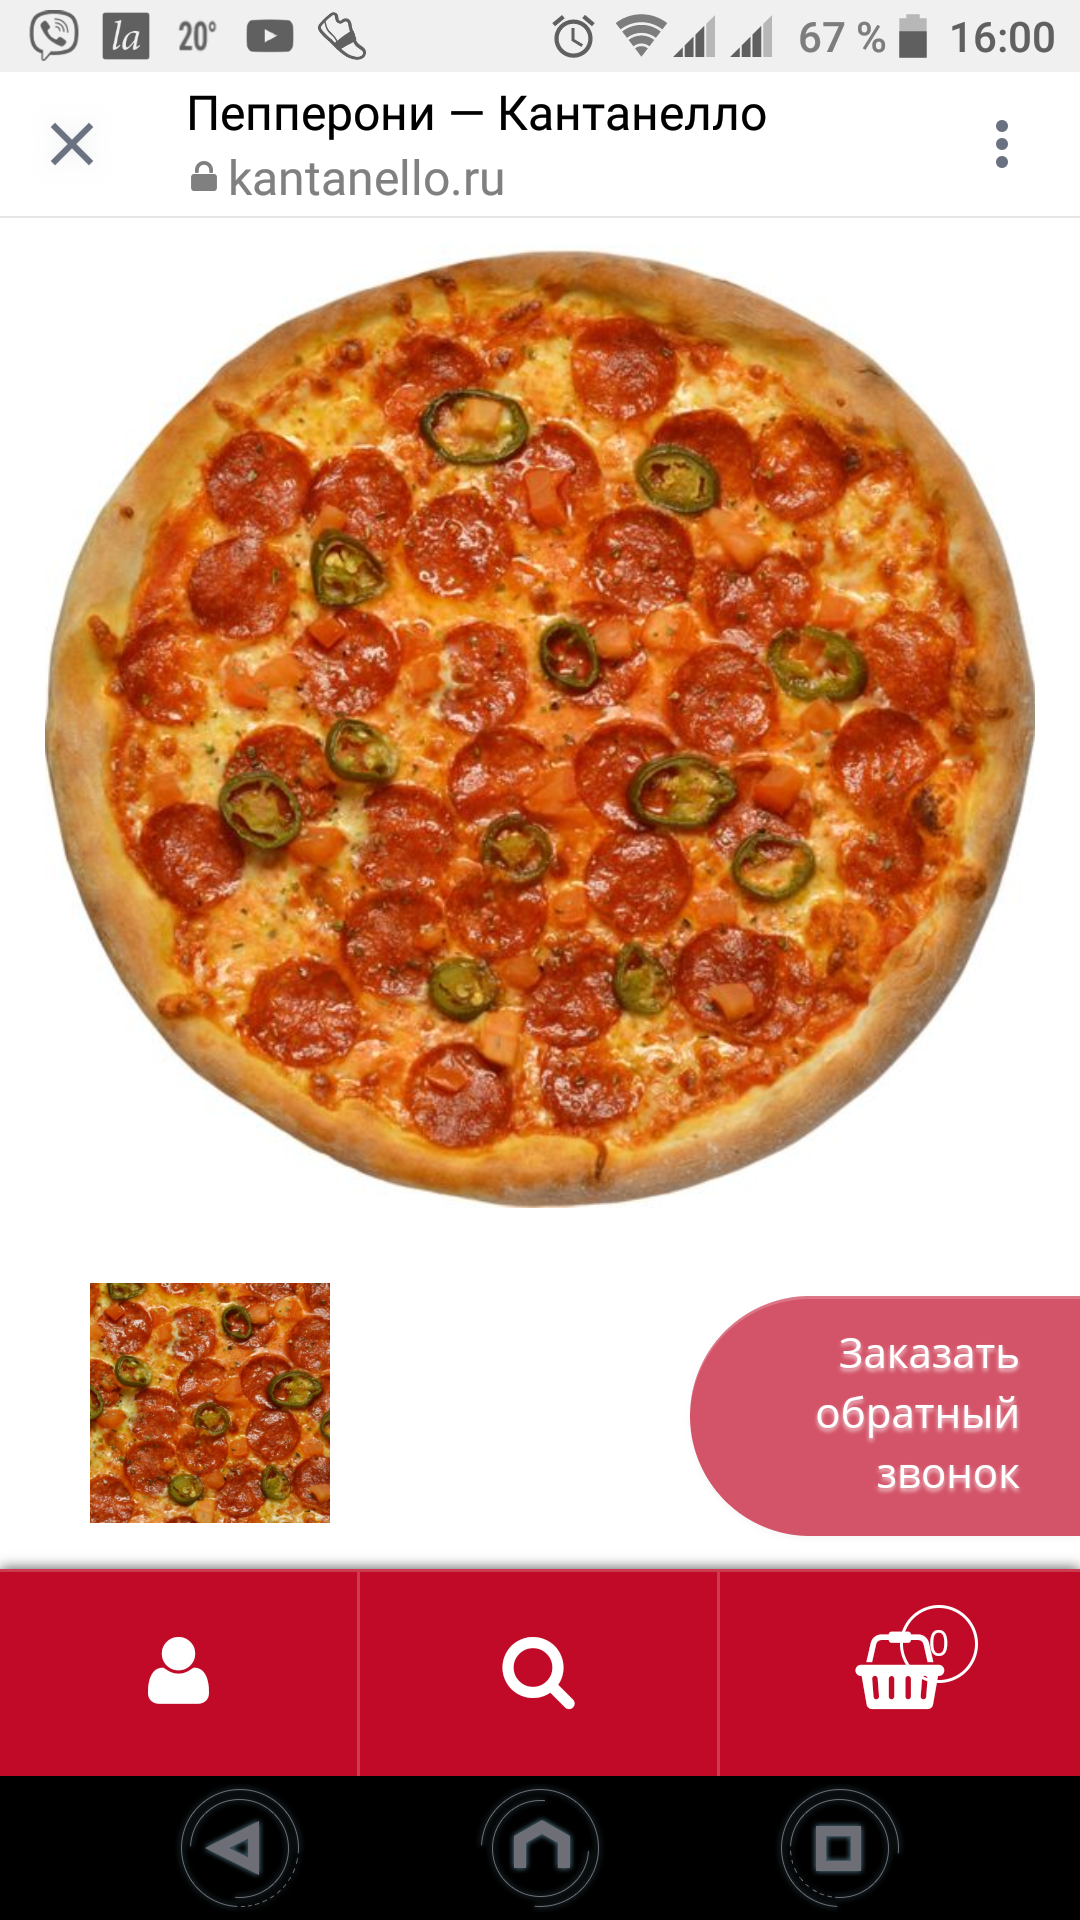 омск лучшая пицца фото 17